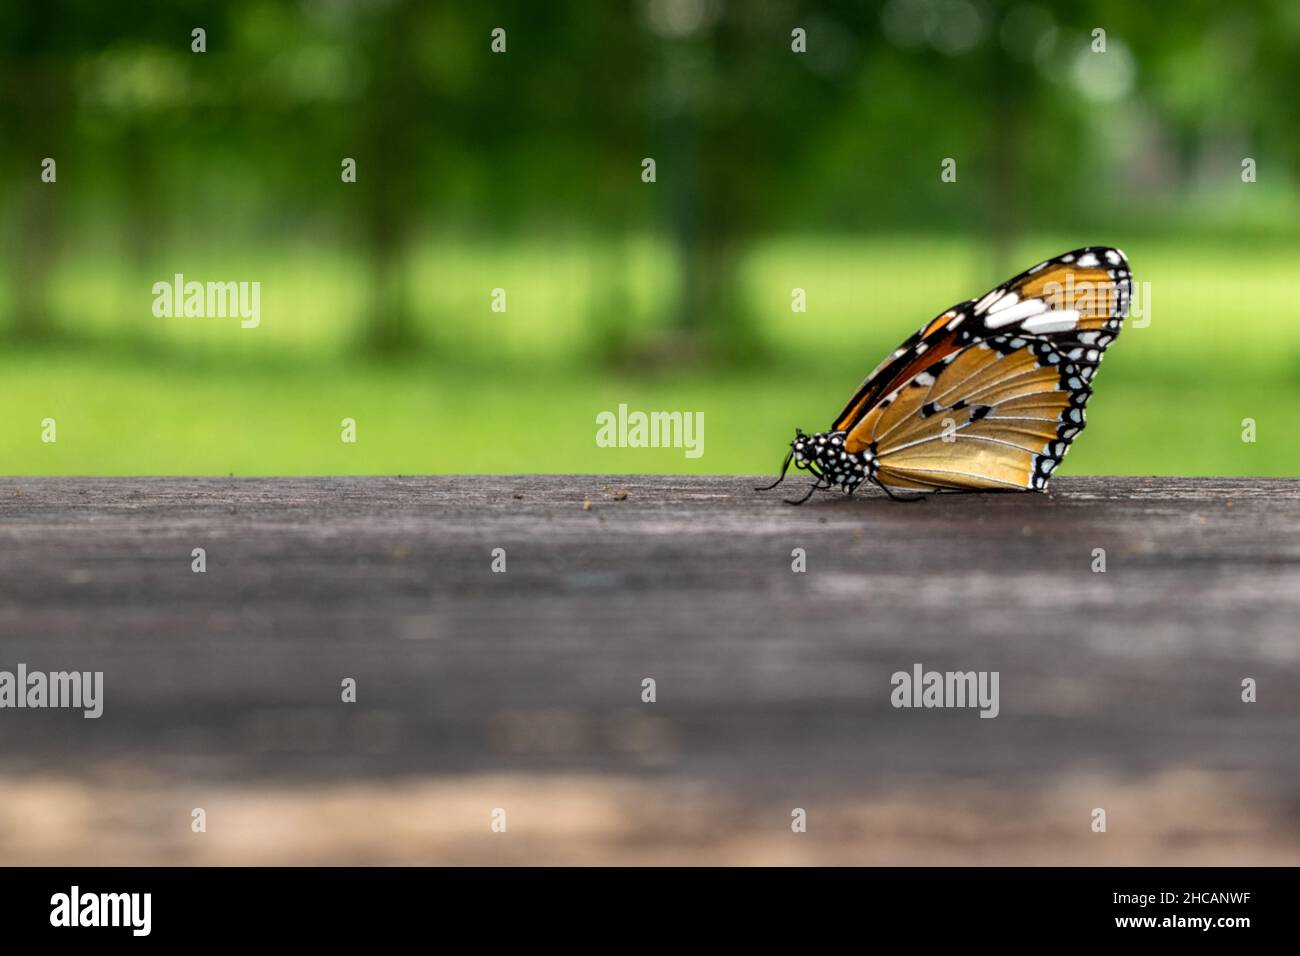 Schmetterling auf einer Bank mit einer Unschärfe von Bäumen im Hintergrund. Stockfoto